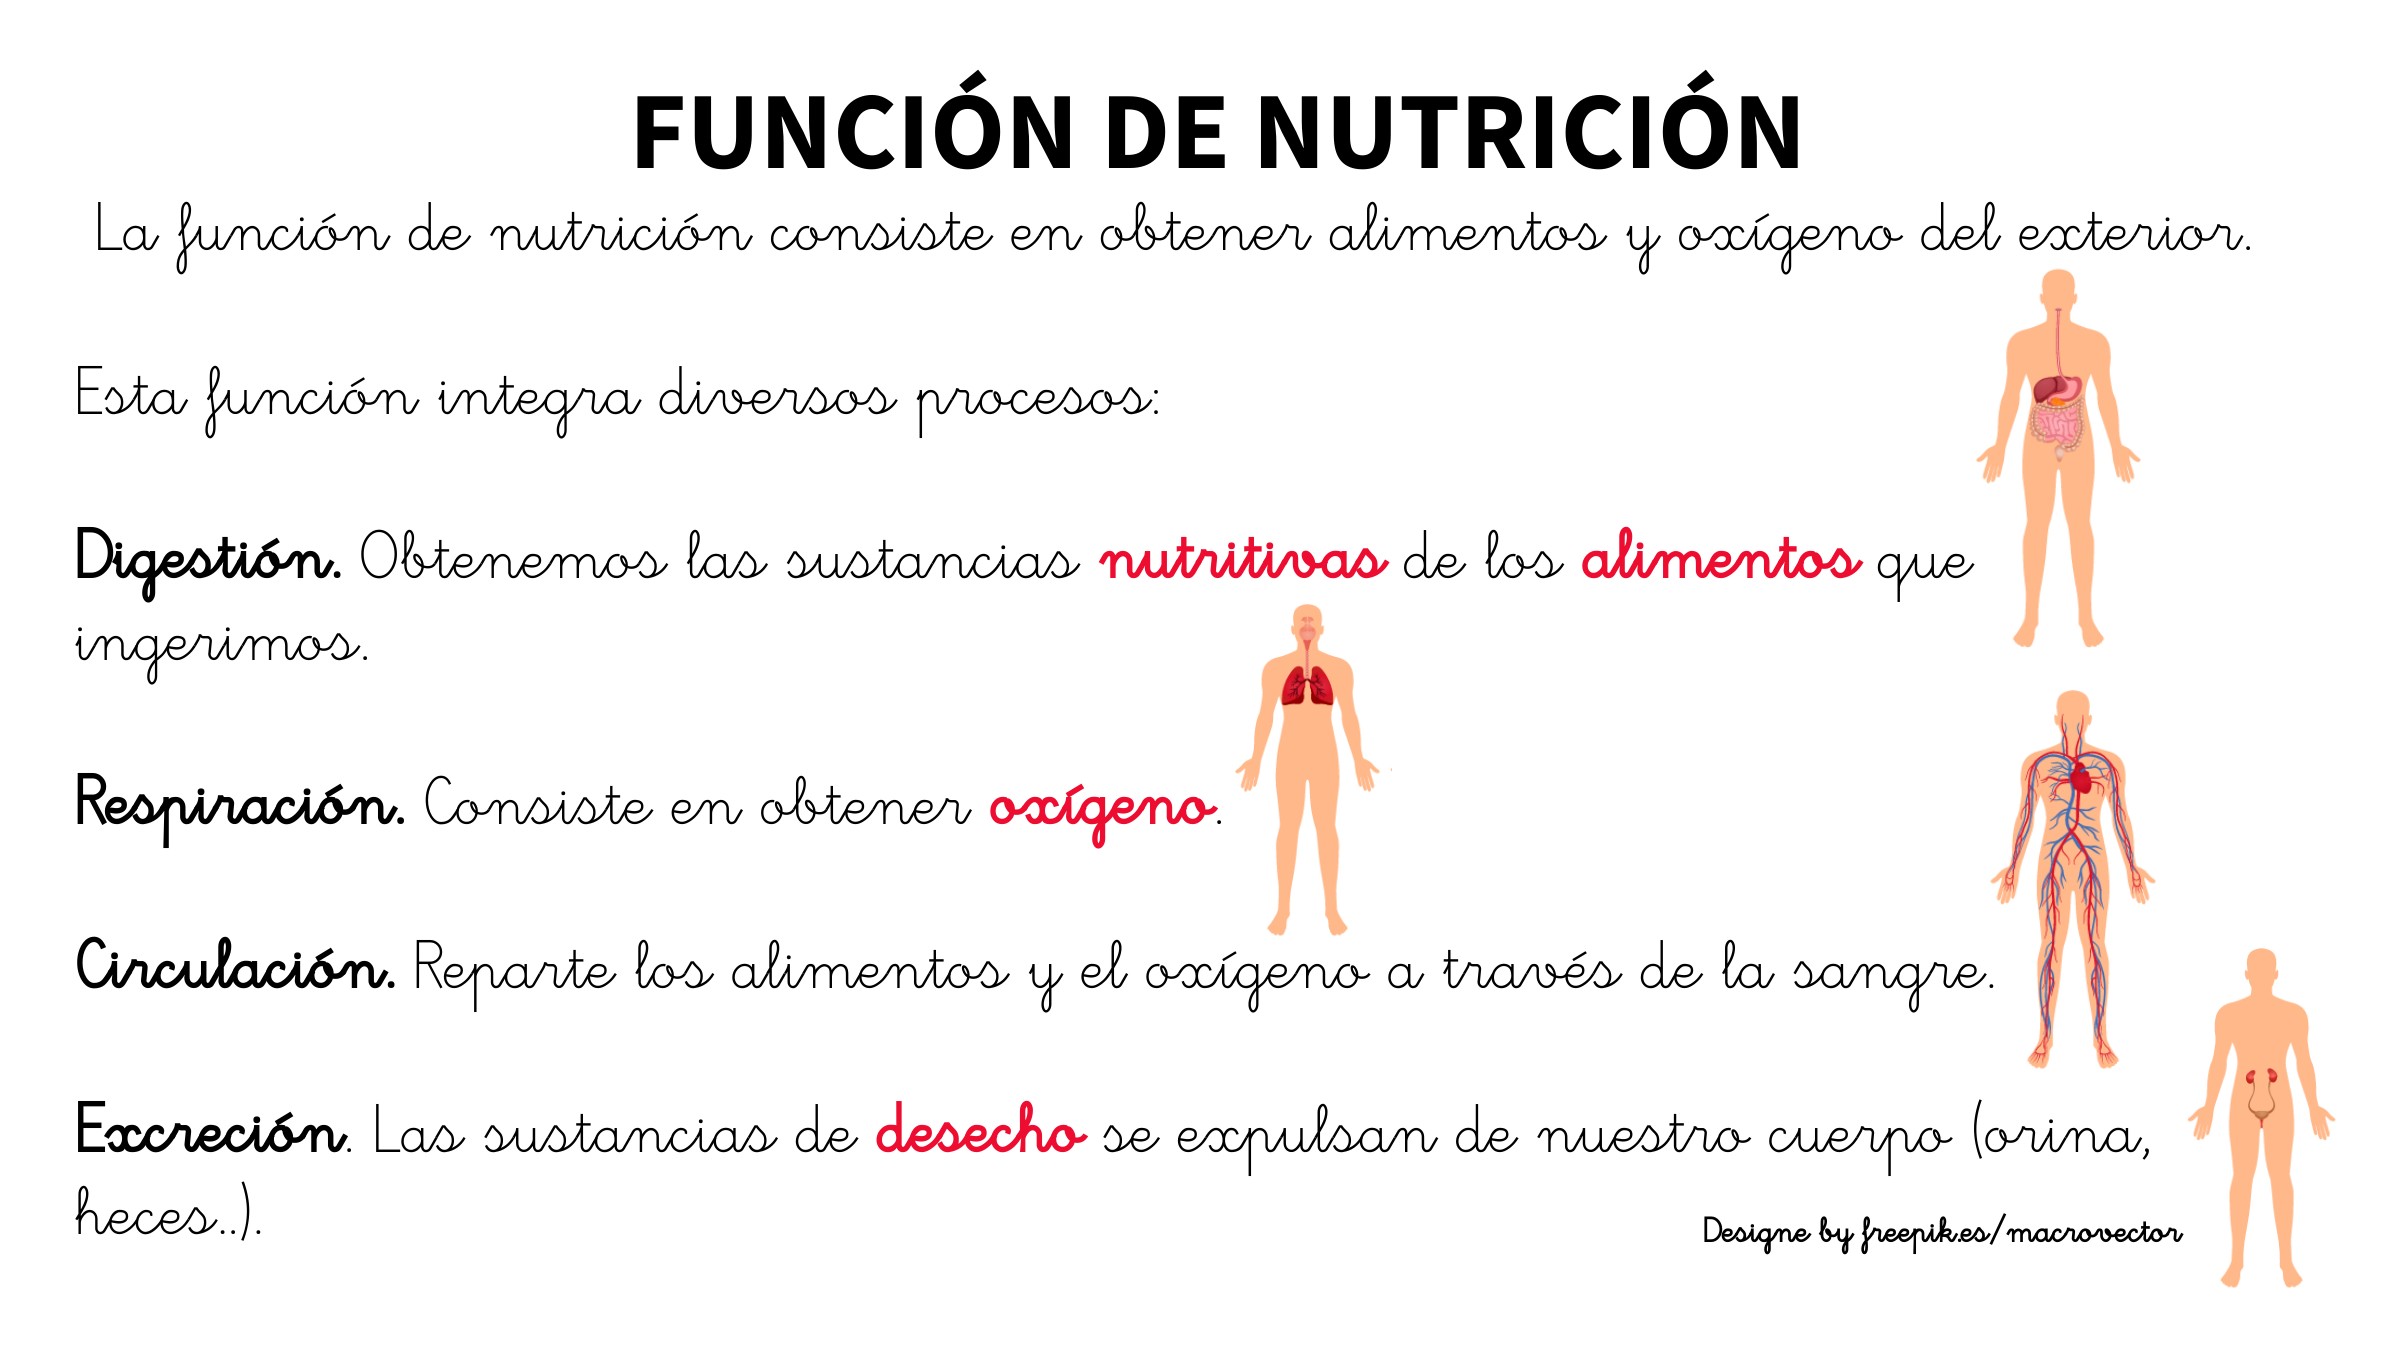 Breve explicación de la función de nutrición